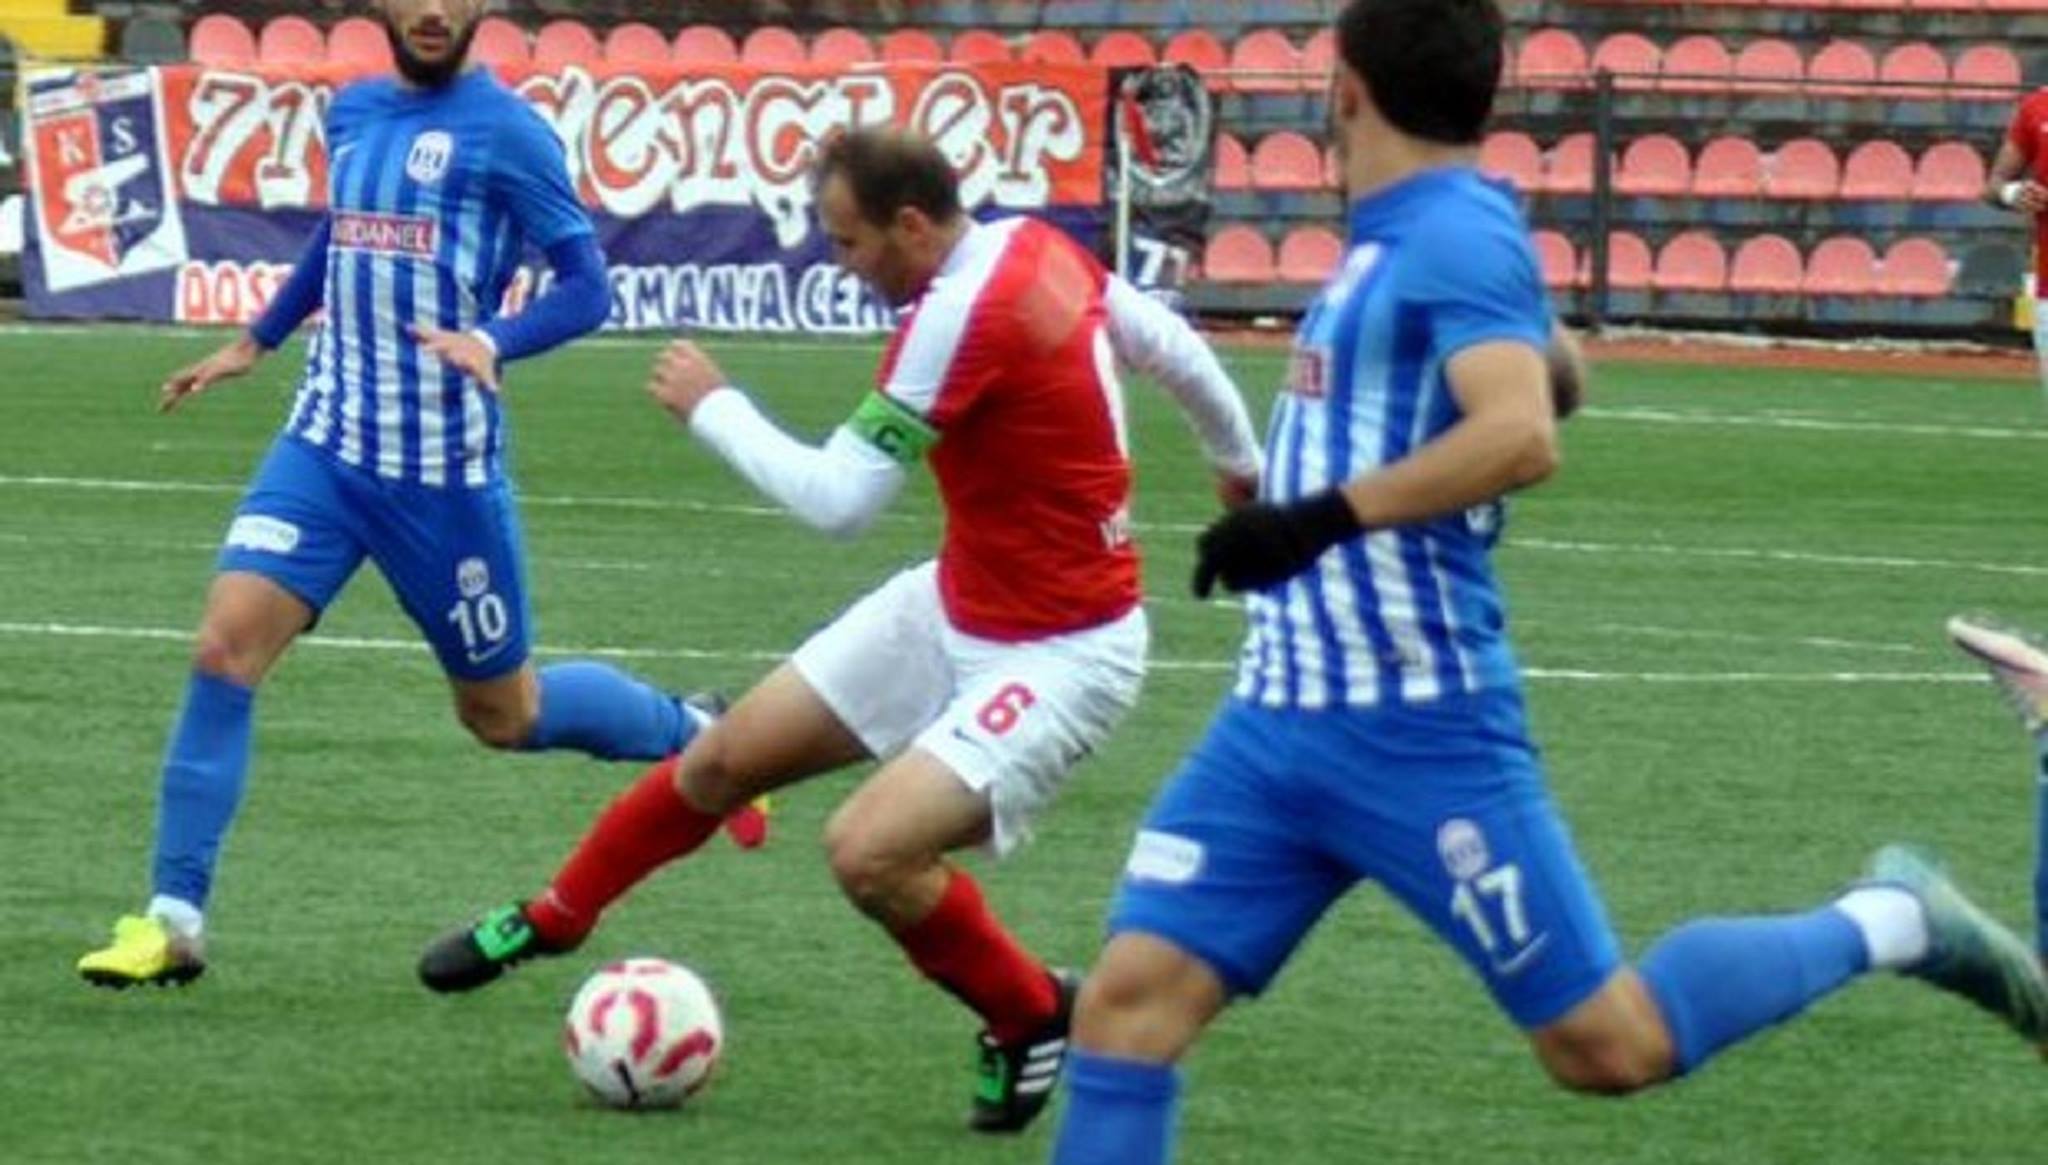 TM Kırıkkalespor 0-1 Ç.Dardanelspor